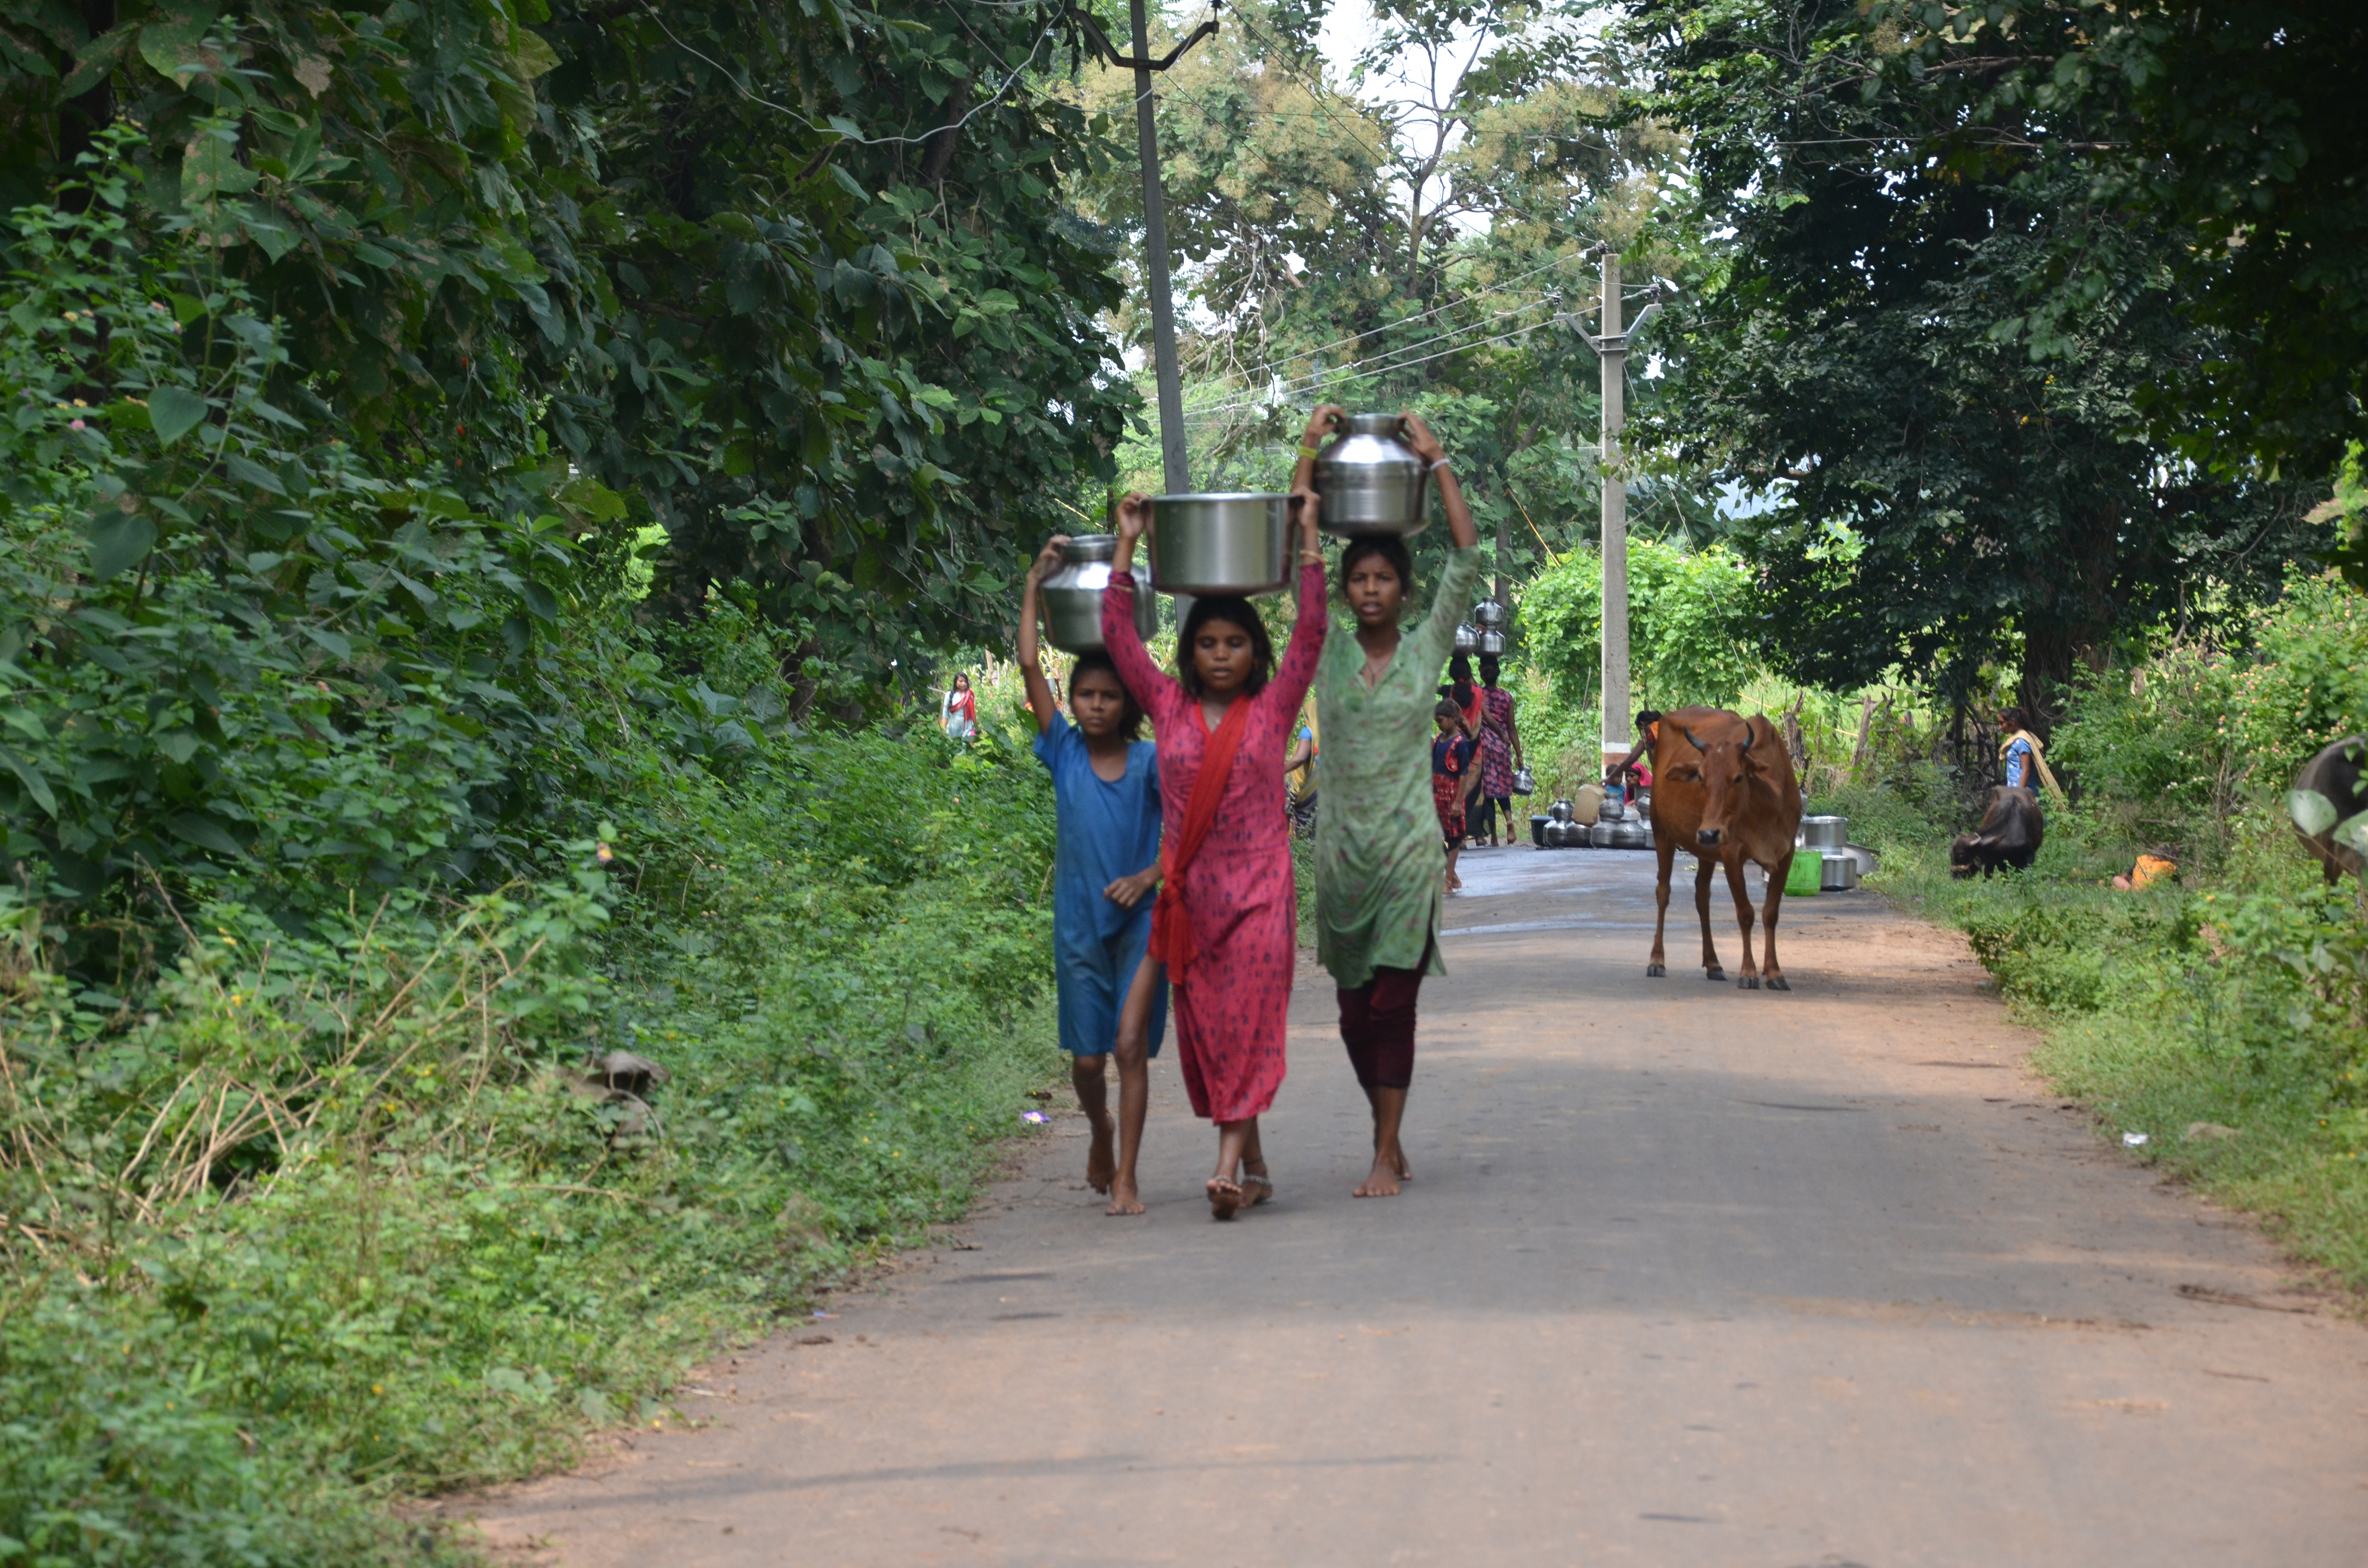 नर्मदा की बाढ़ से प्रभावित जोगा गांव में पेयजल के लिए रोज जद्दोजहद करती हैं महिलाएं